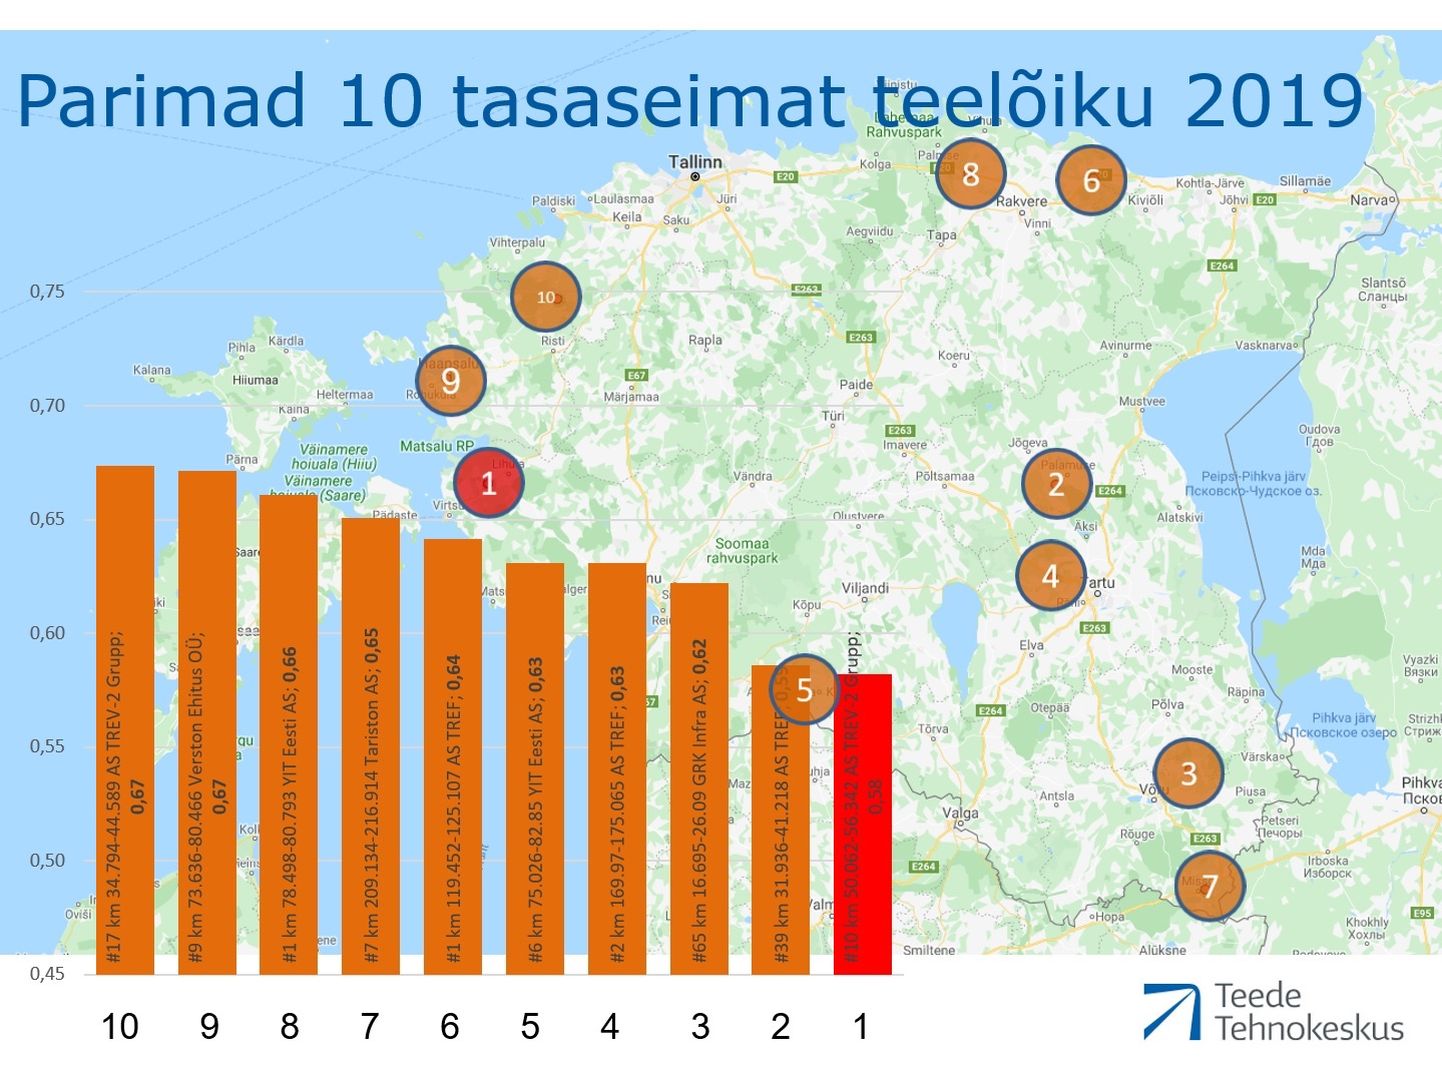 Eesti tasaseimad 2019. aastal ehitatud teed.